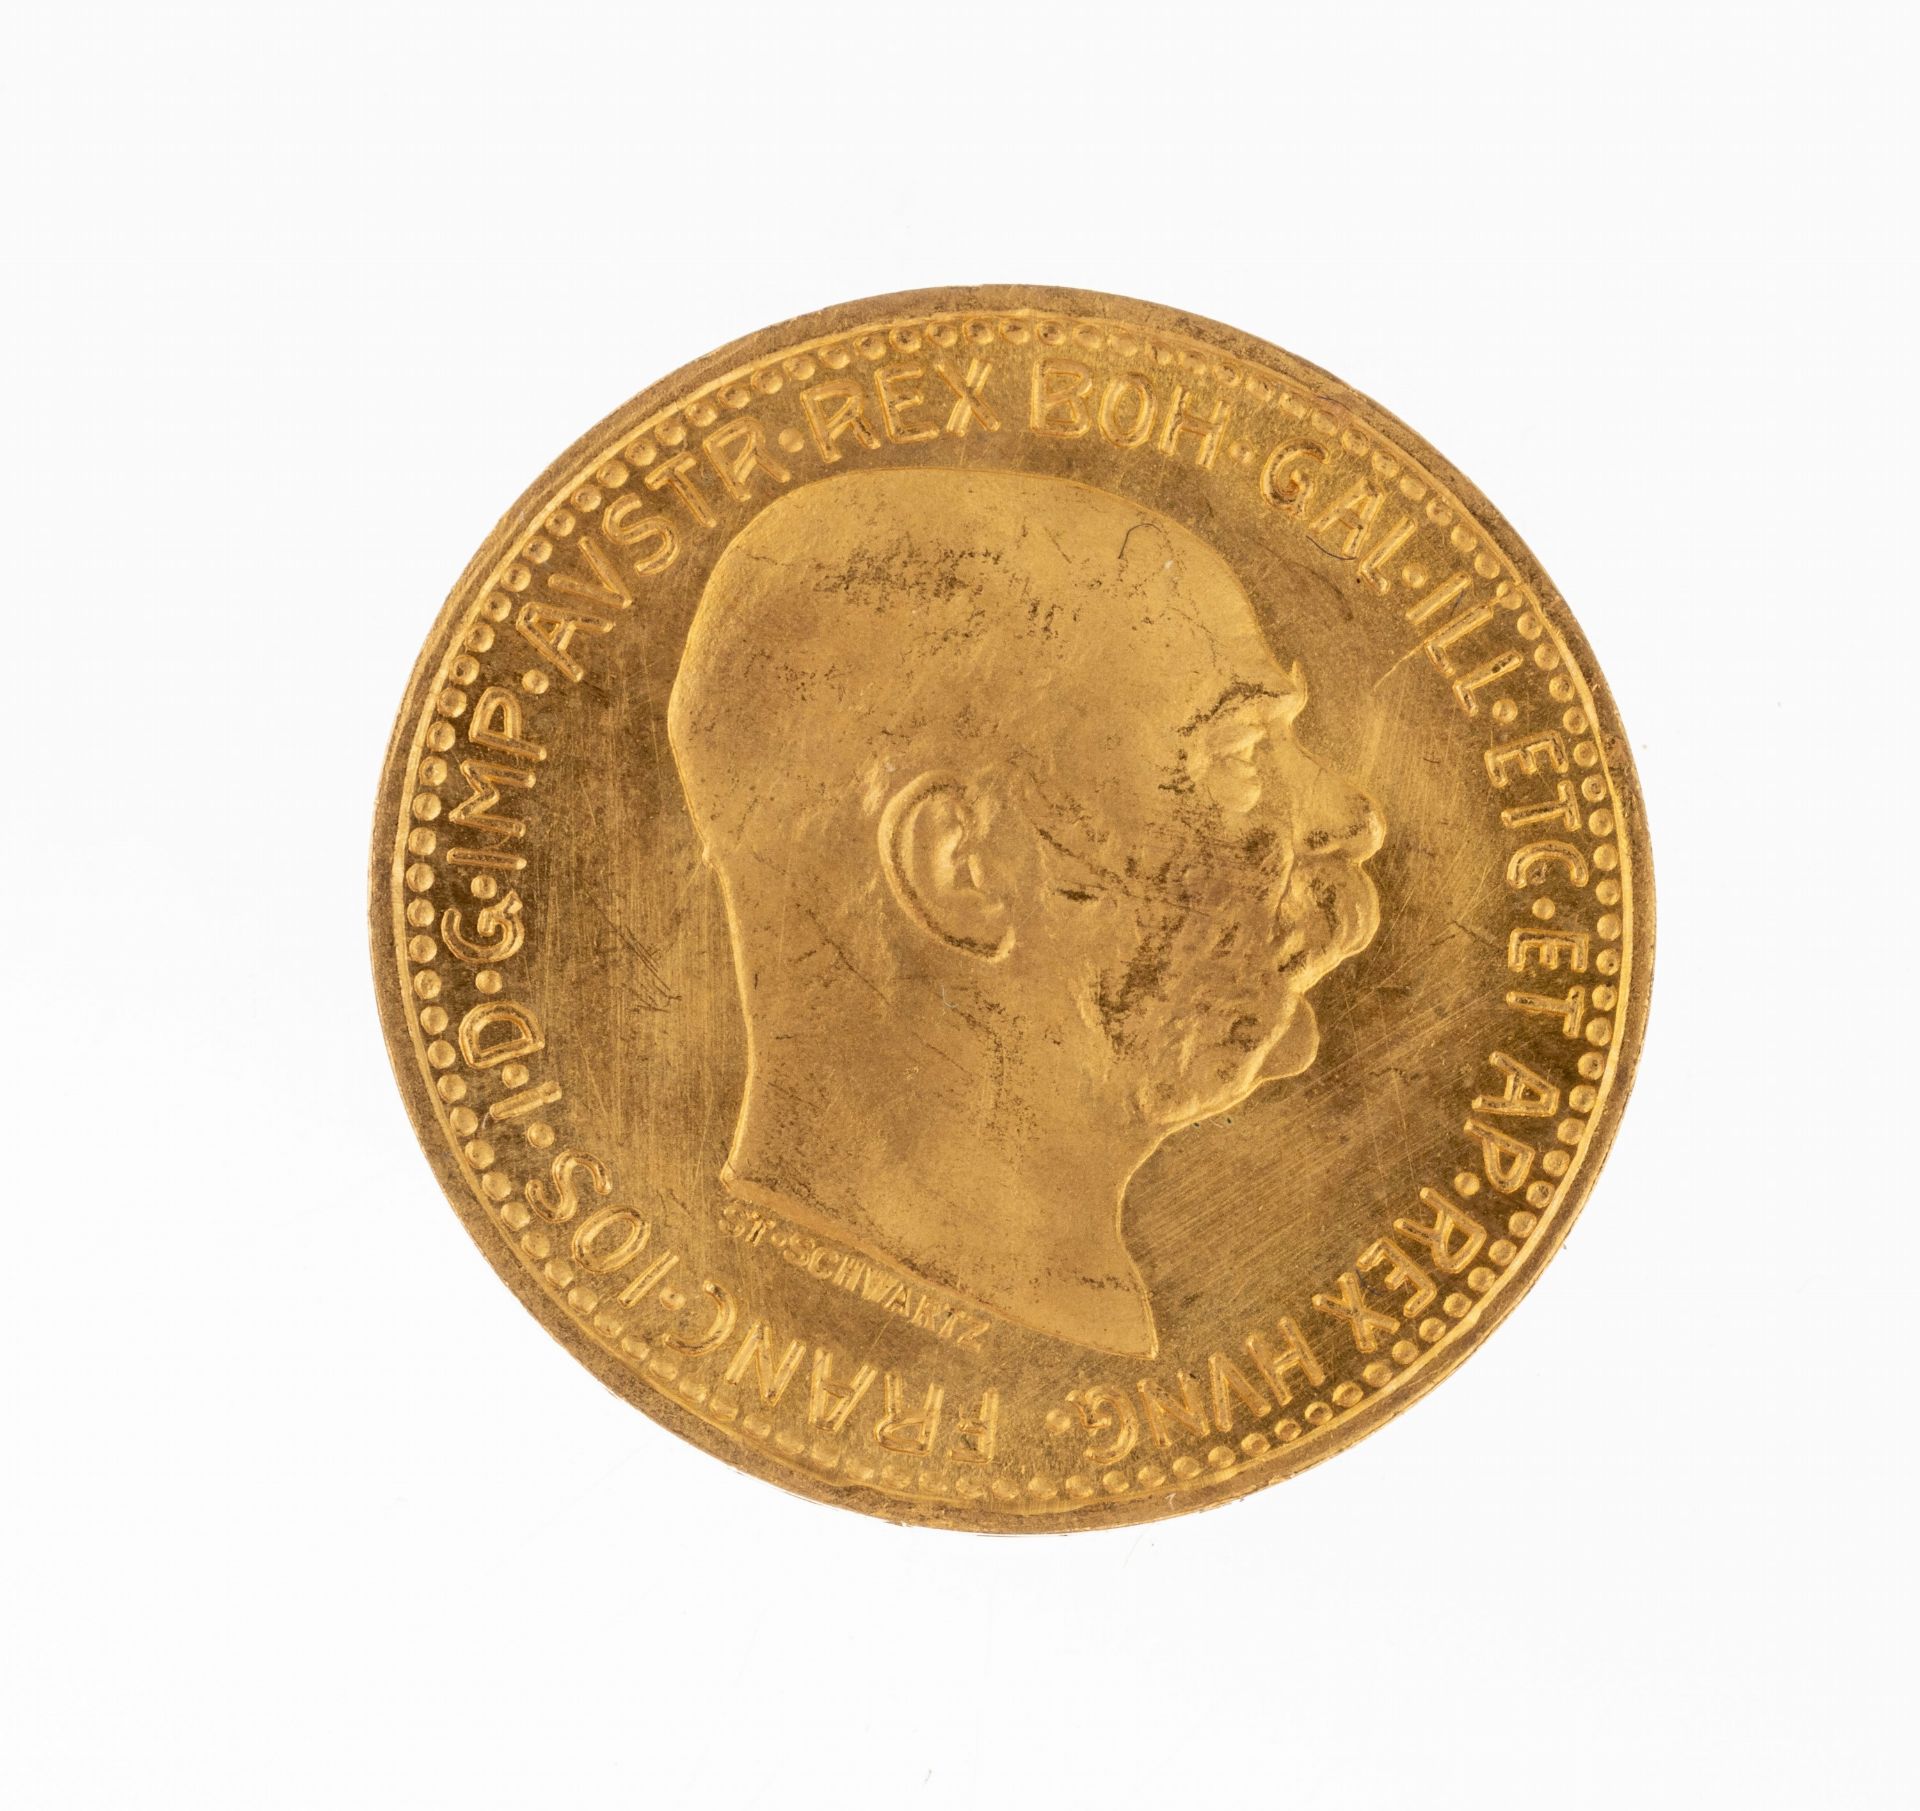 Goldmünze 10 Kronen, Österreich Ungarn, 1912, Franz